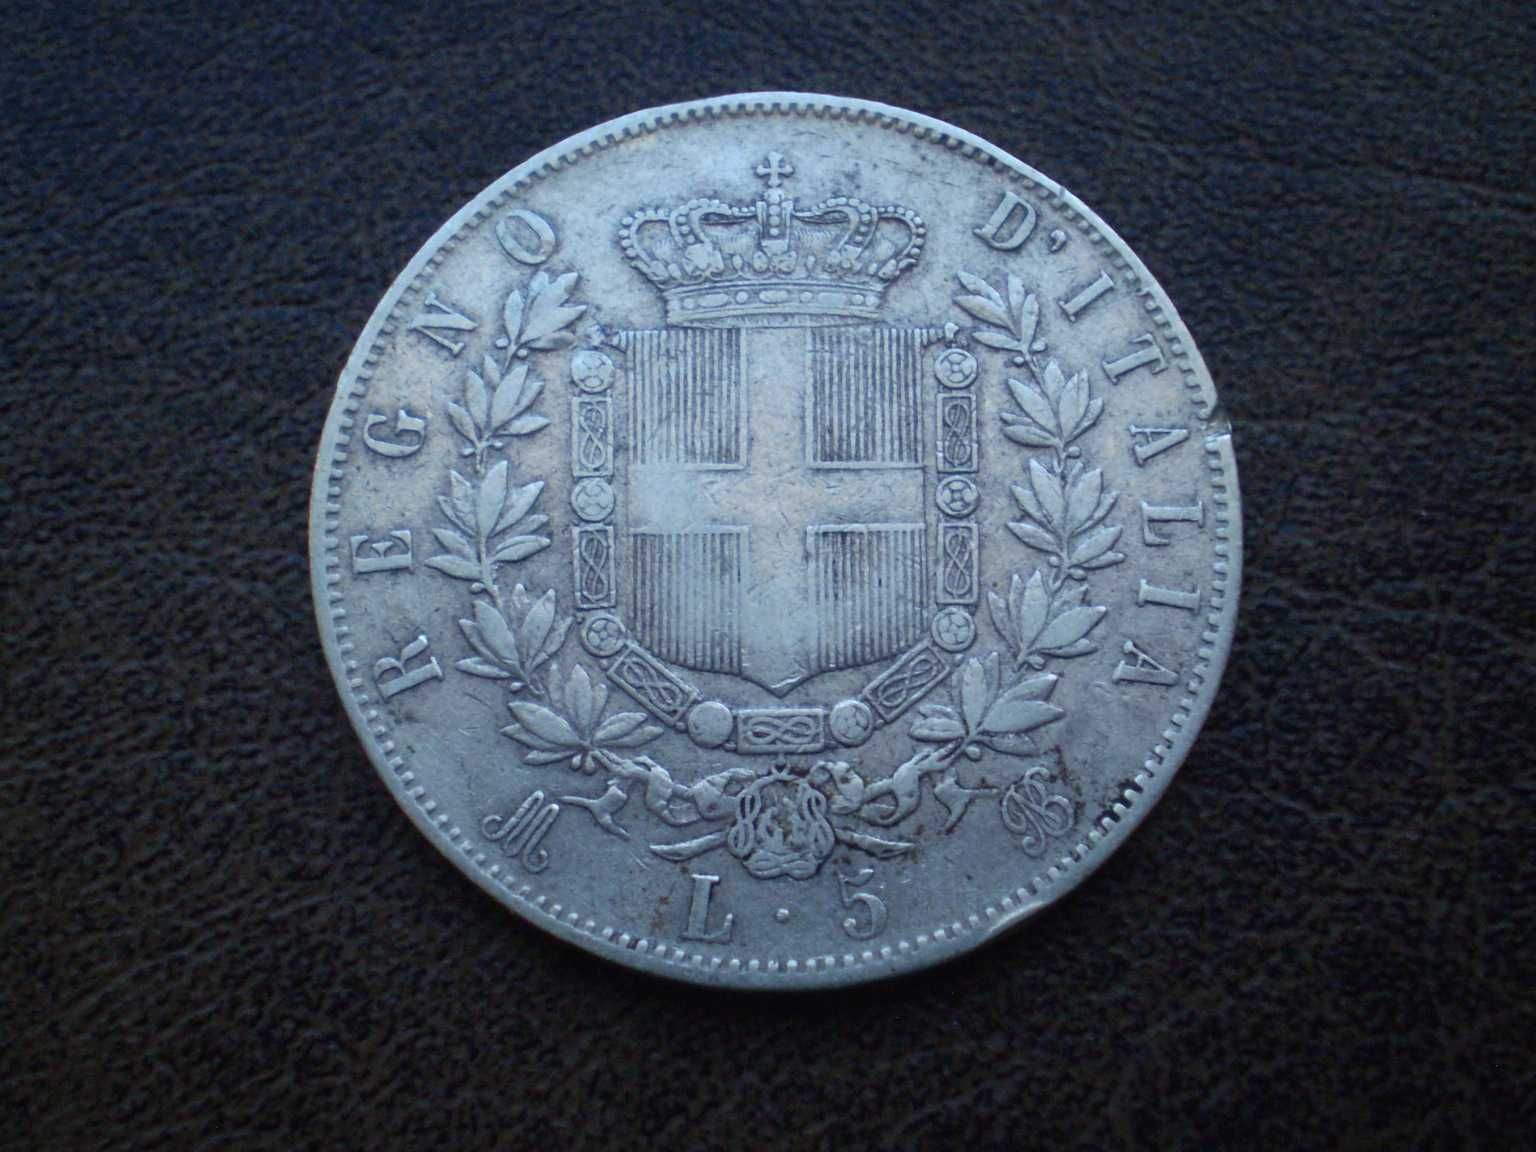 Серебро 5 лир 1874-го года королевство Италия